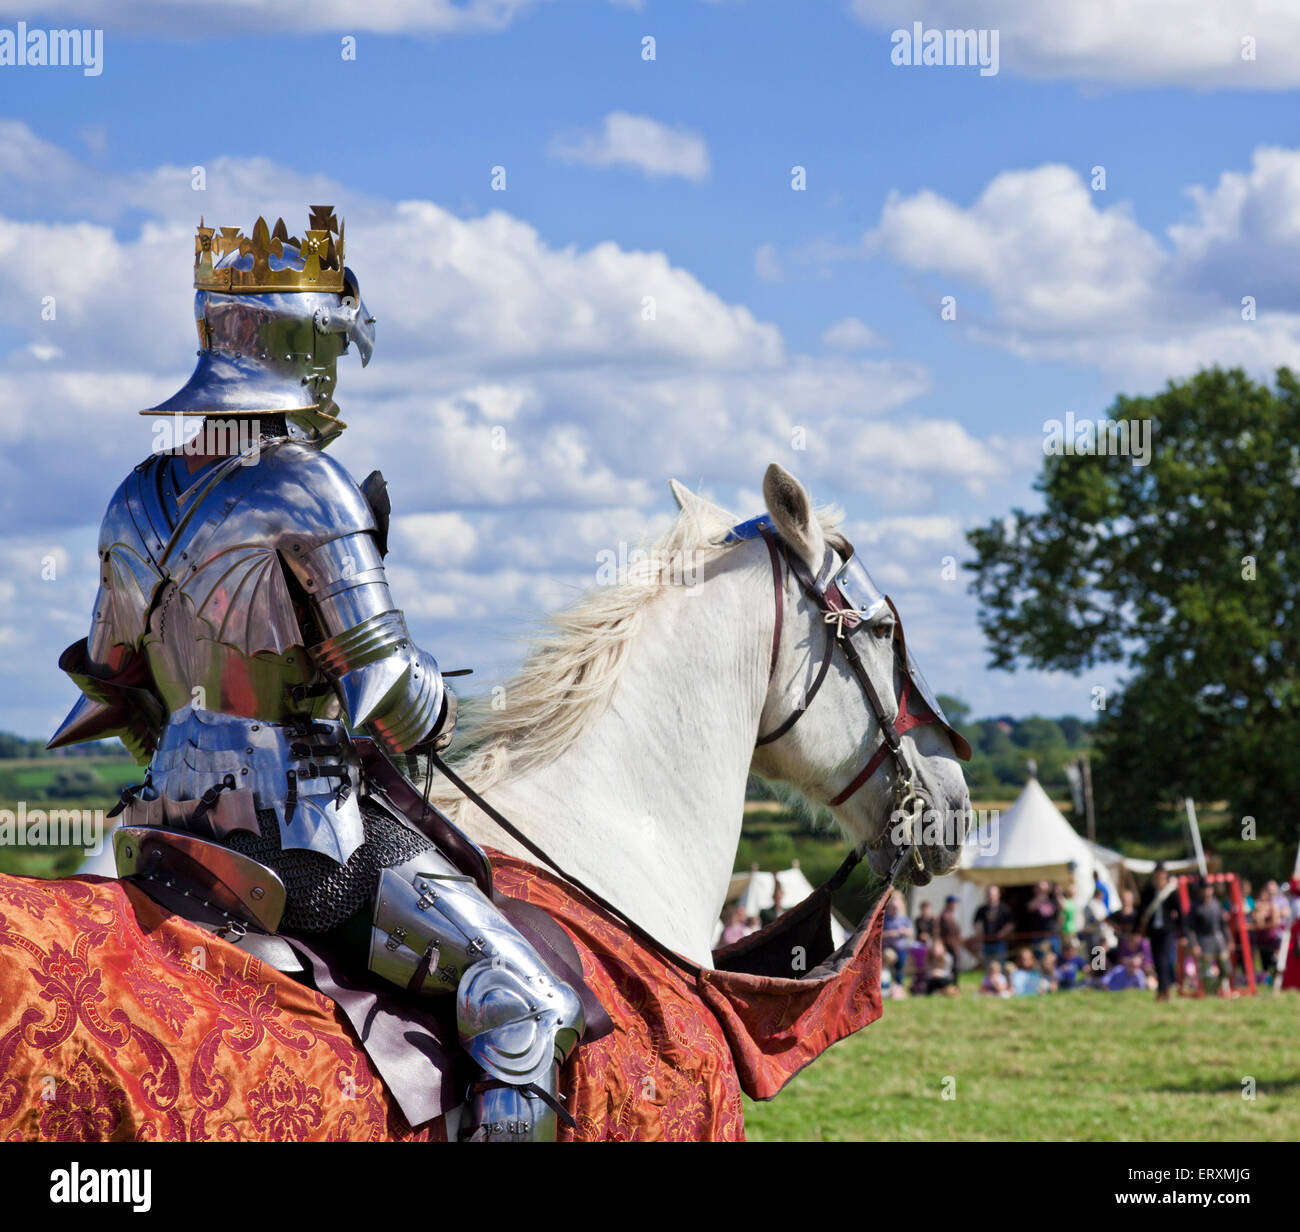 Le roi Richard III regarde la bataille avant la défaite à la bataille de Bosworth Leicestershire Angleterre UK GB EU Europe Banque D'Images